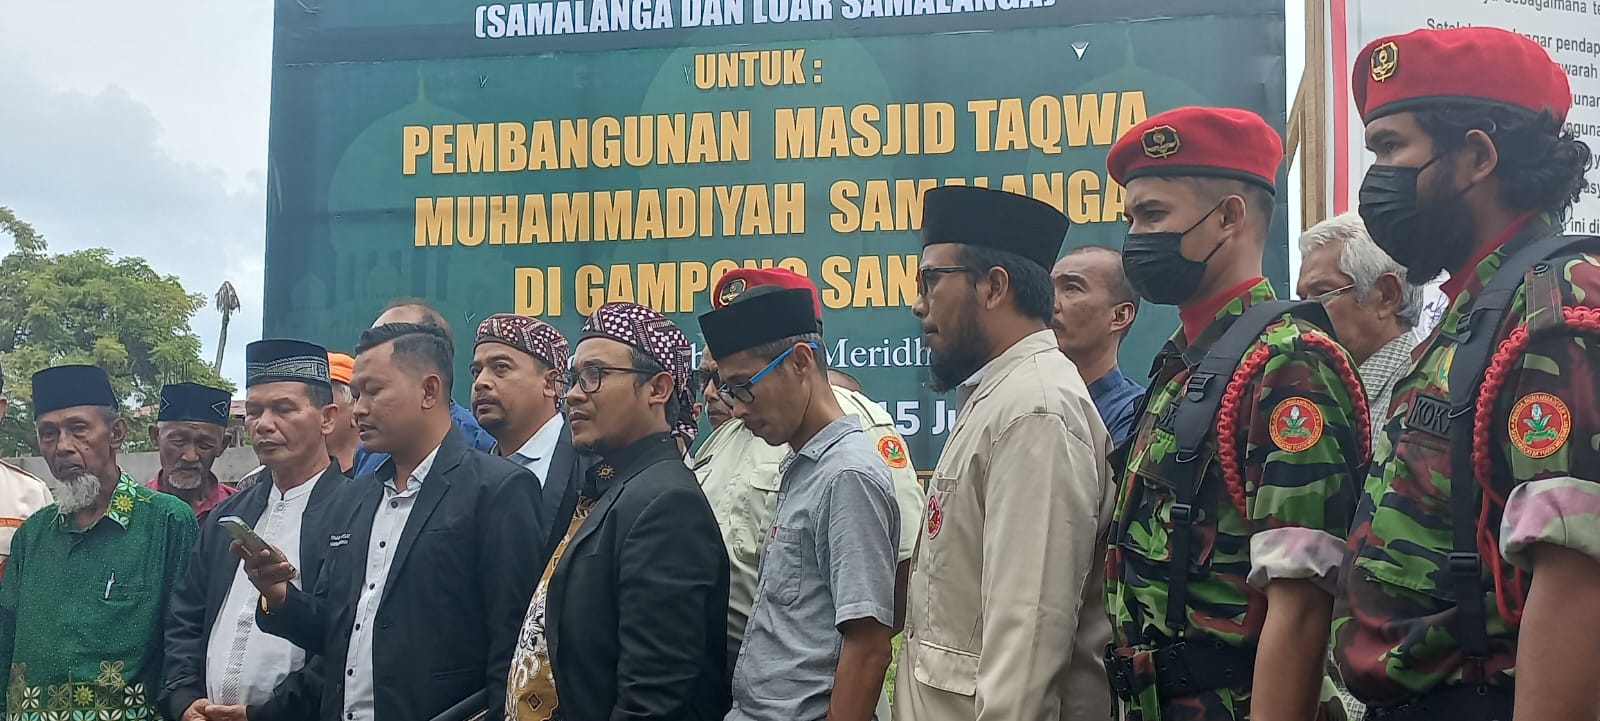 Menghalangi Pembangunan Masjid Muhammadiyah Melanggar HAM 